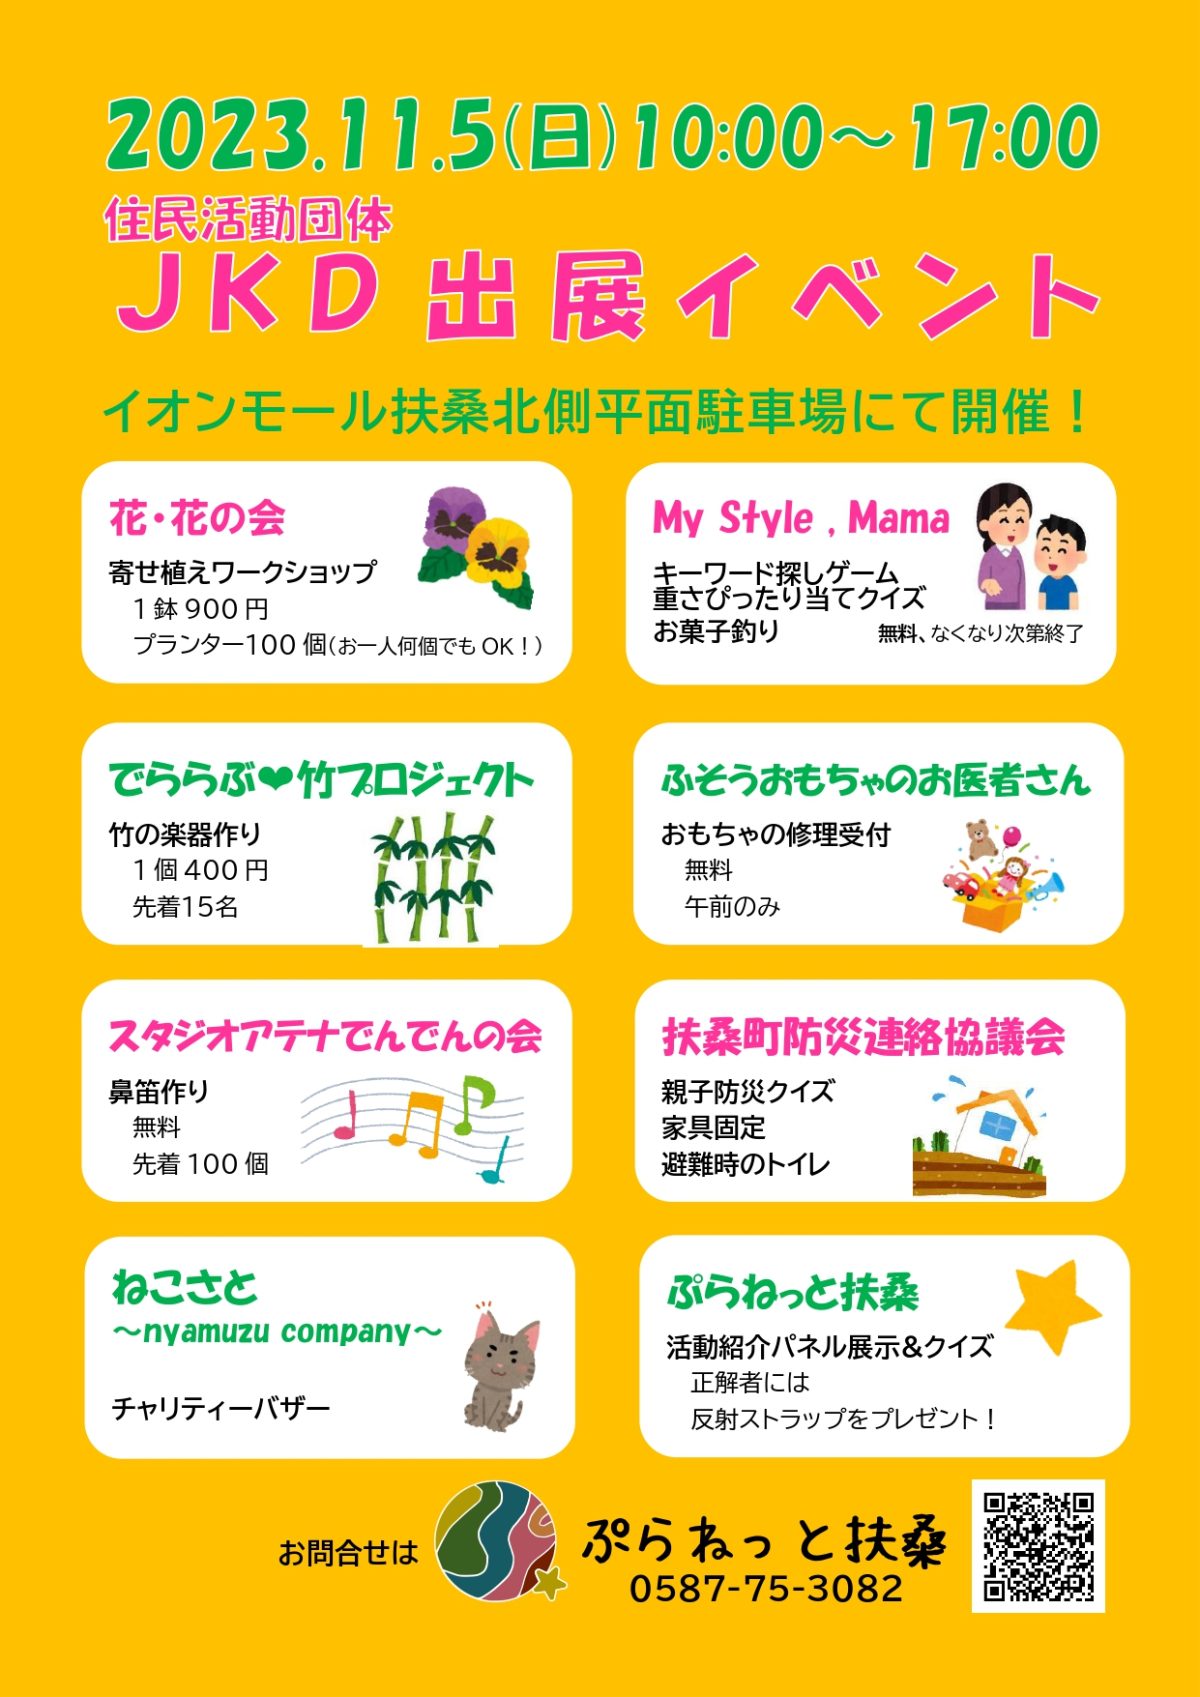 JKD(住民活動団体)出展イベントのお知らせ